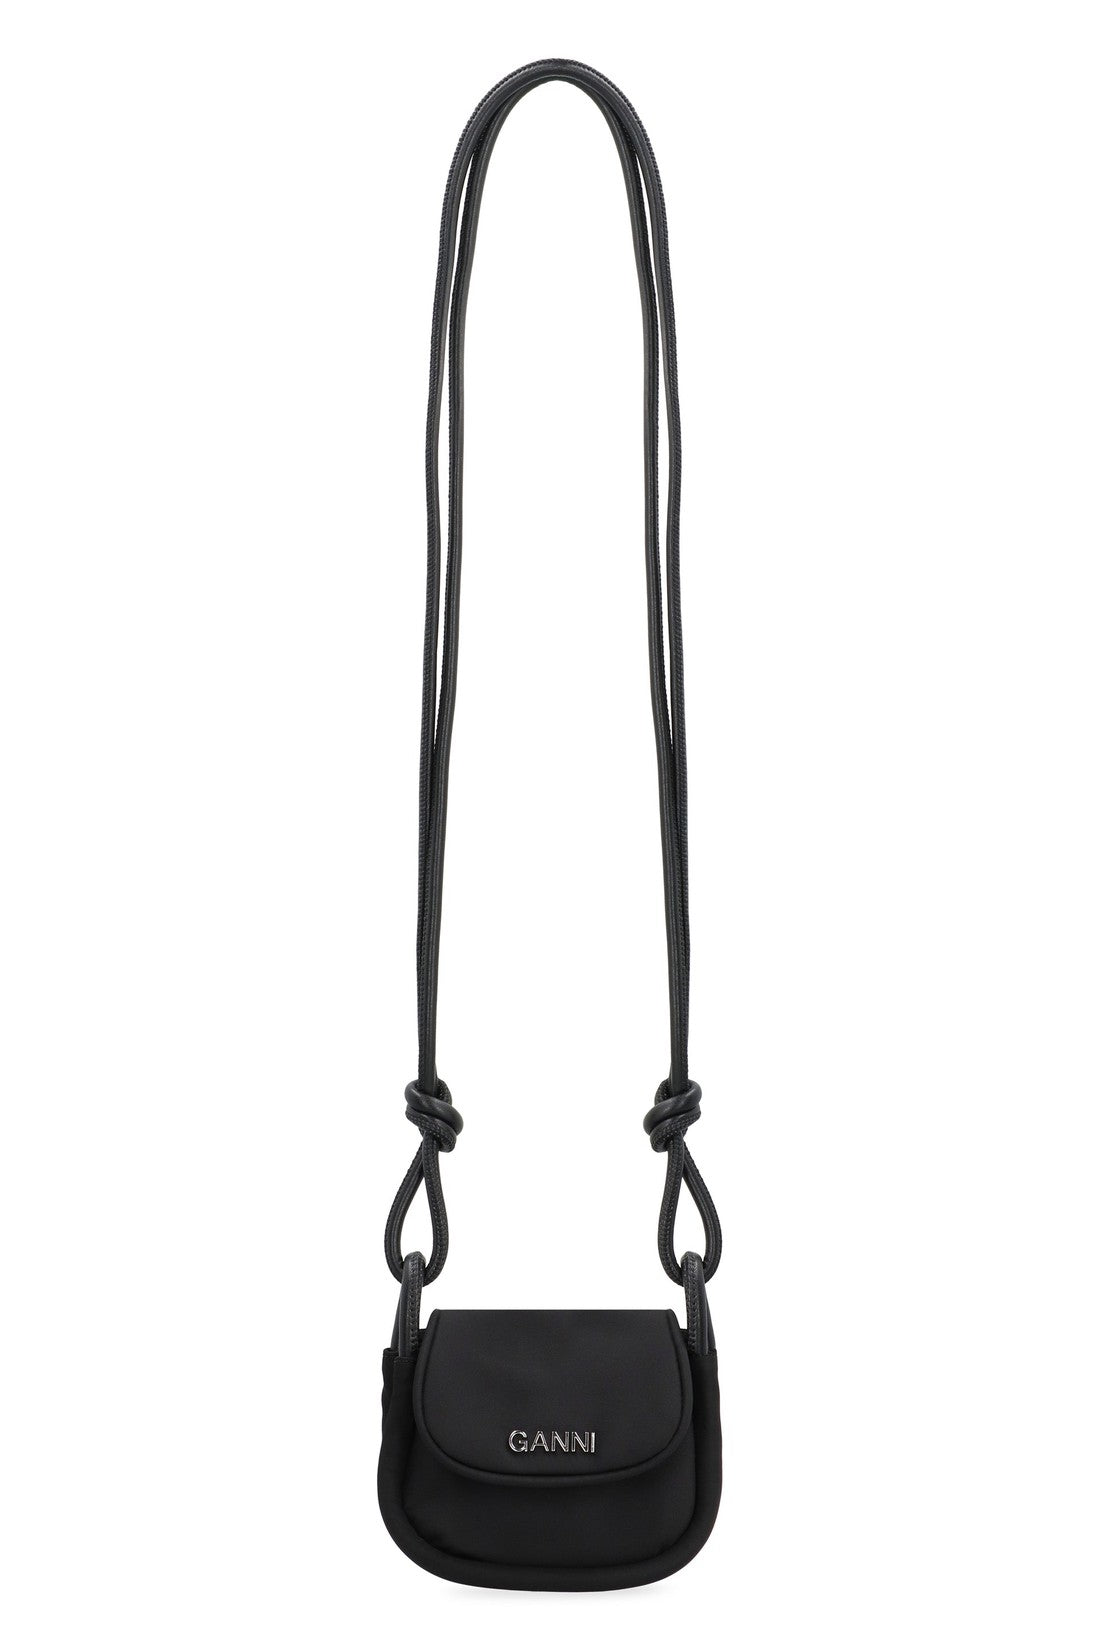 GANNI-OUTLET-SALE-Knot mini crossbody bag-ARCHIVIST